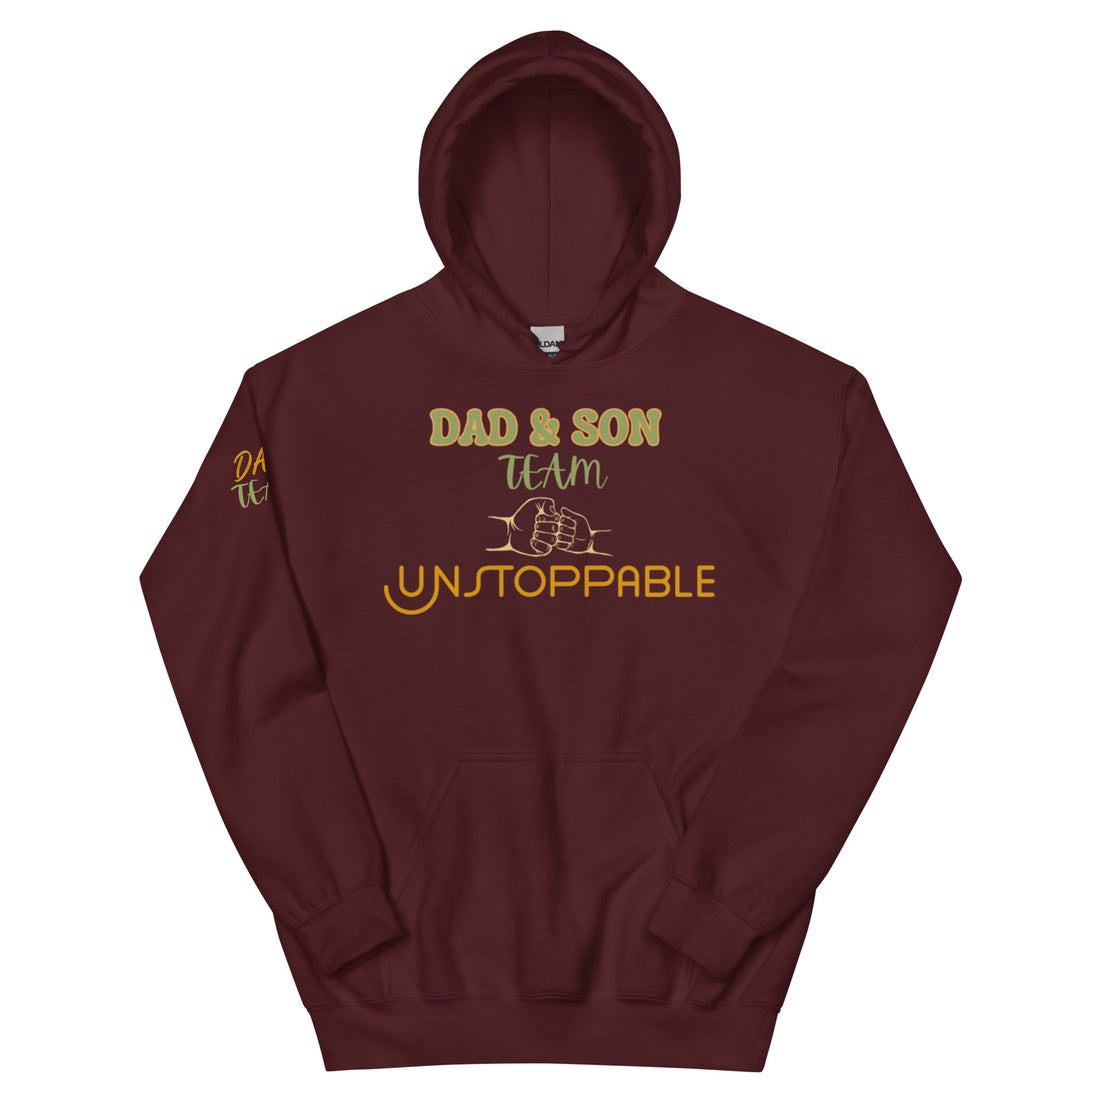 Dad & Son Team - Men's Hoddie